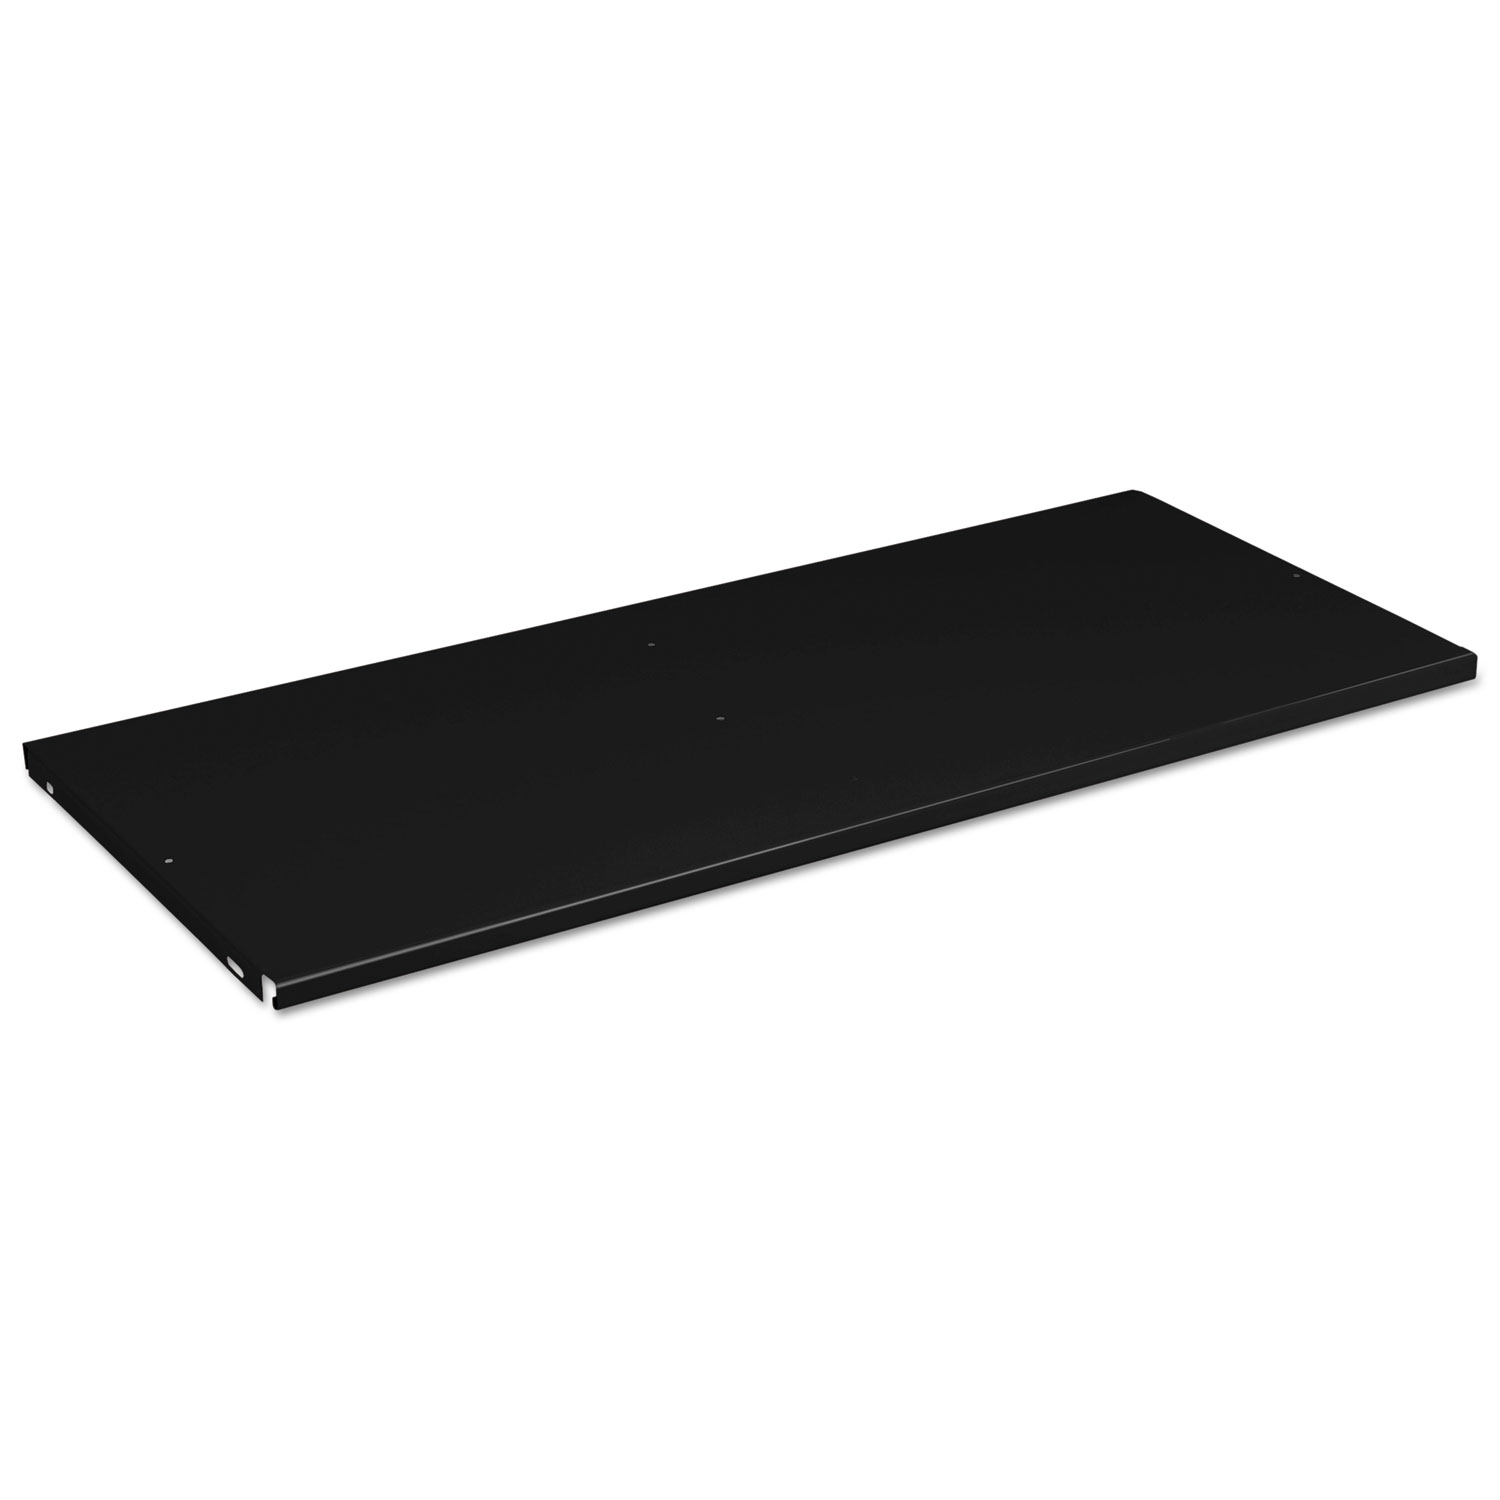 Steel Shelf for Heavy Duty Welded Storage Cabinet, 36w x 24d, Black